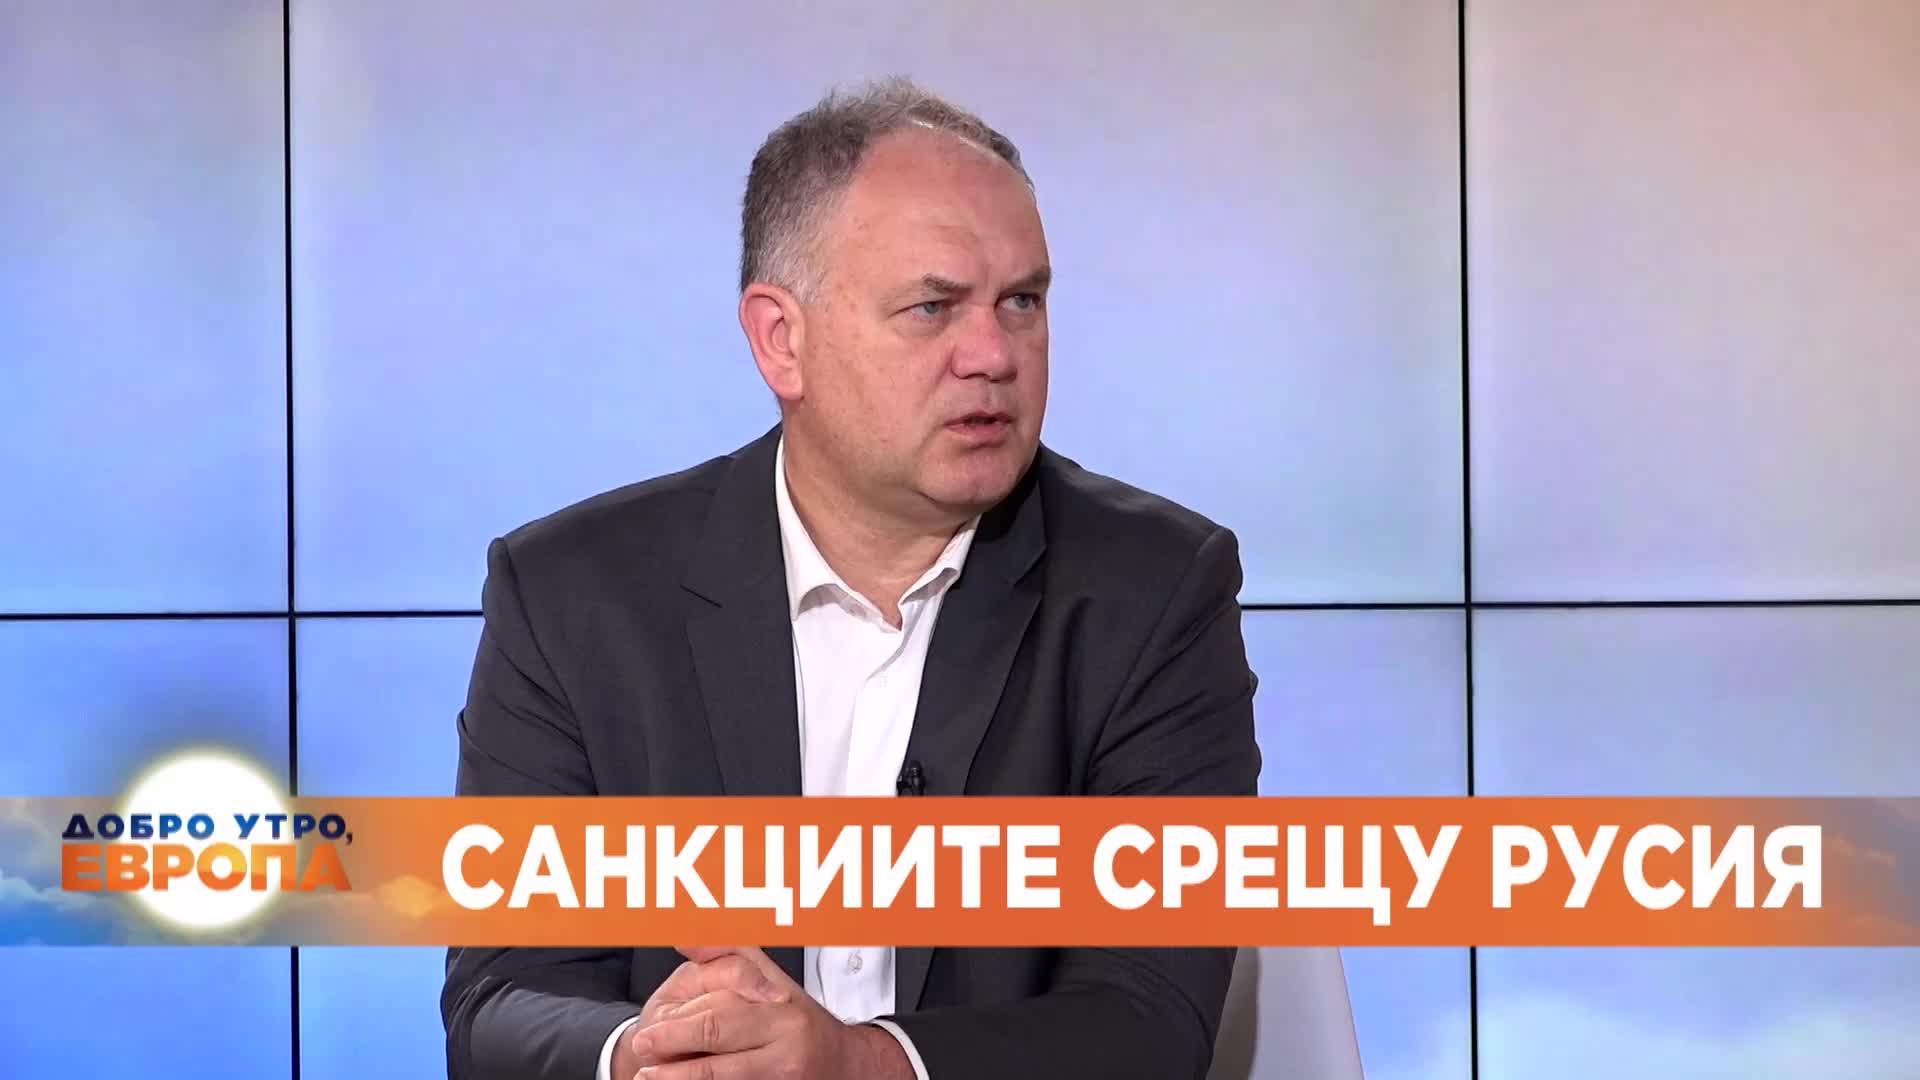 Георги Кадиев за енергийната криза